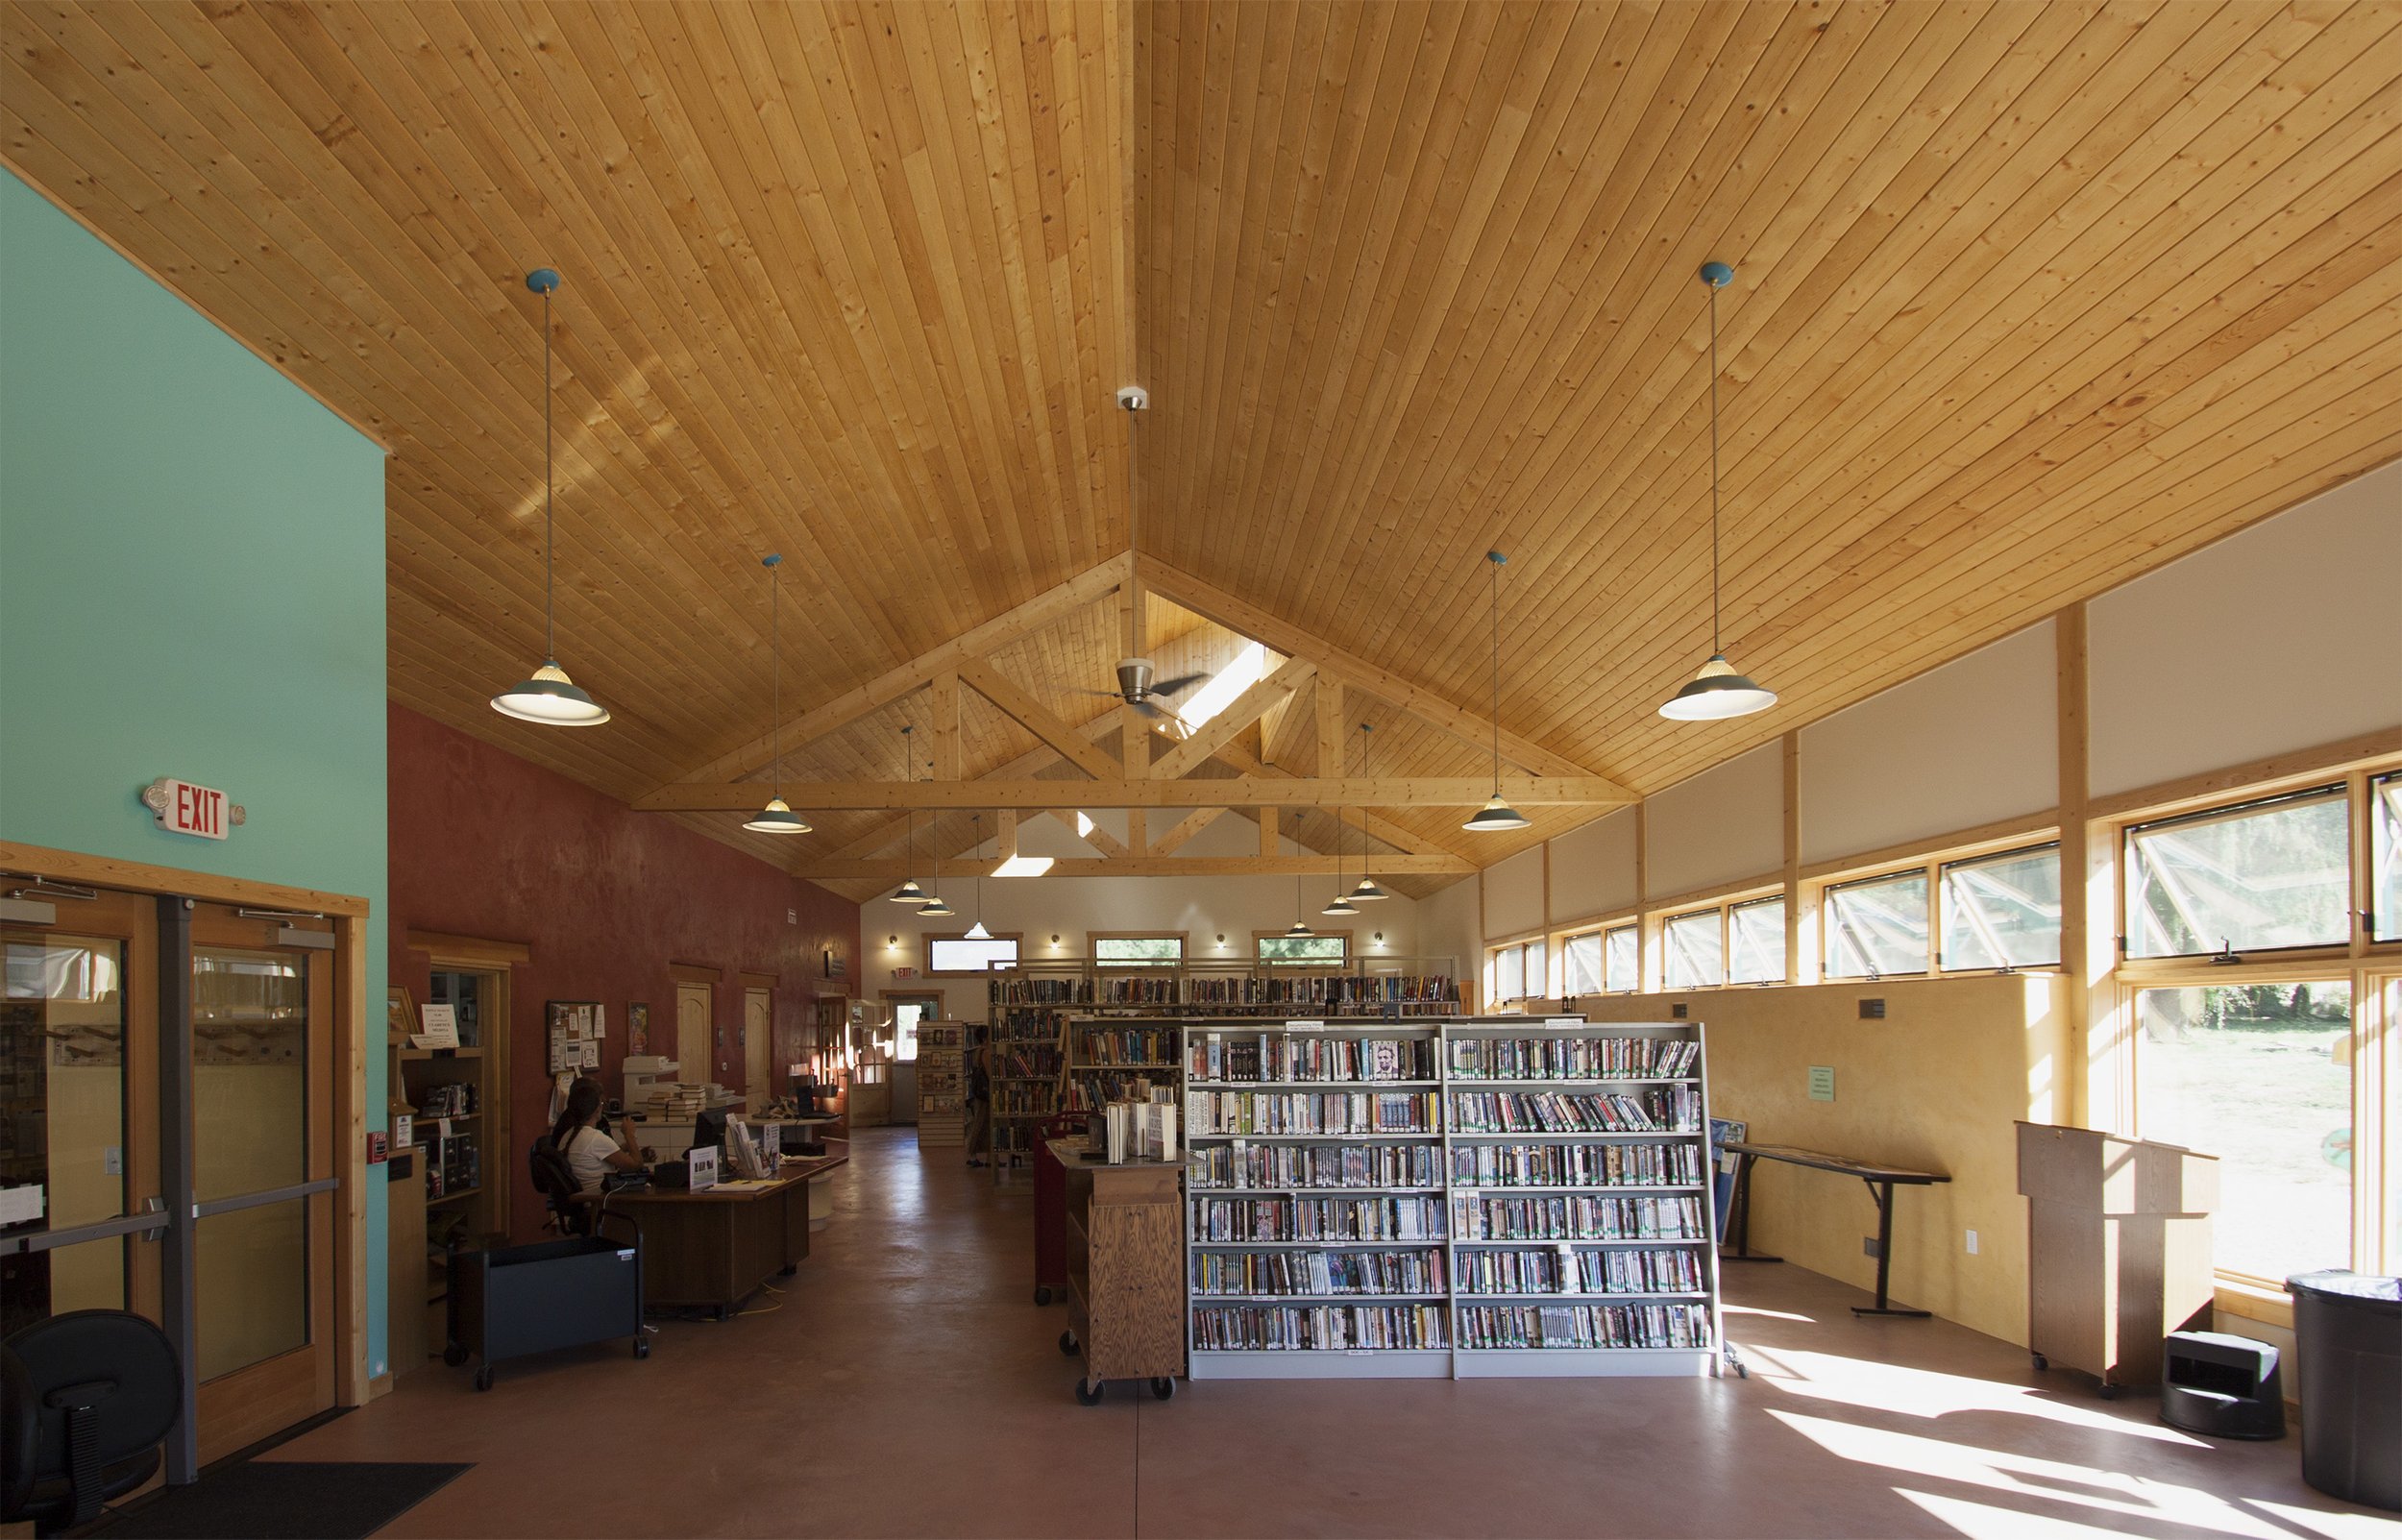 Embudo Valley Community Library